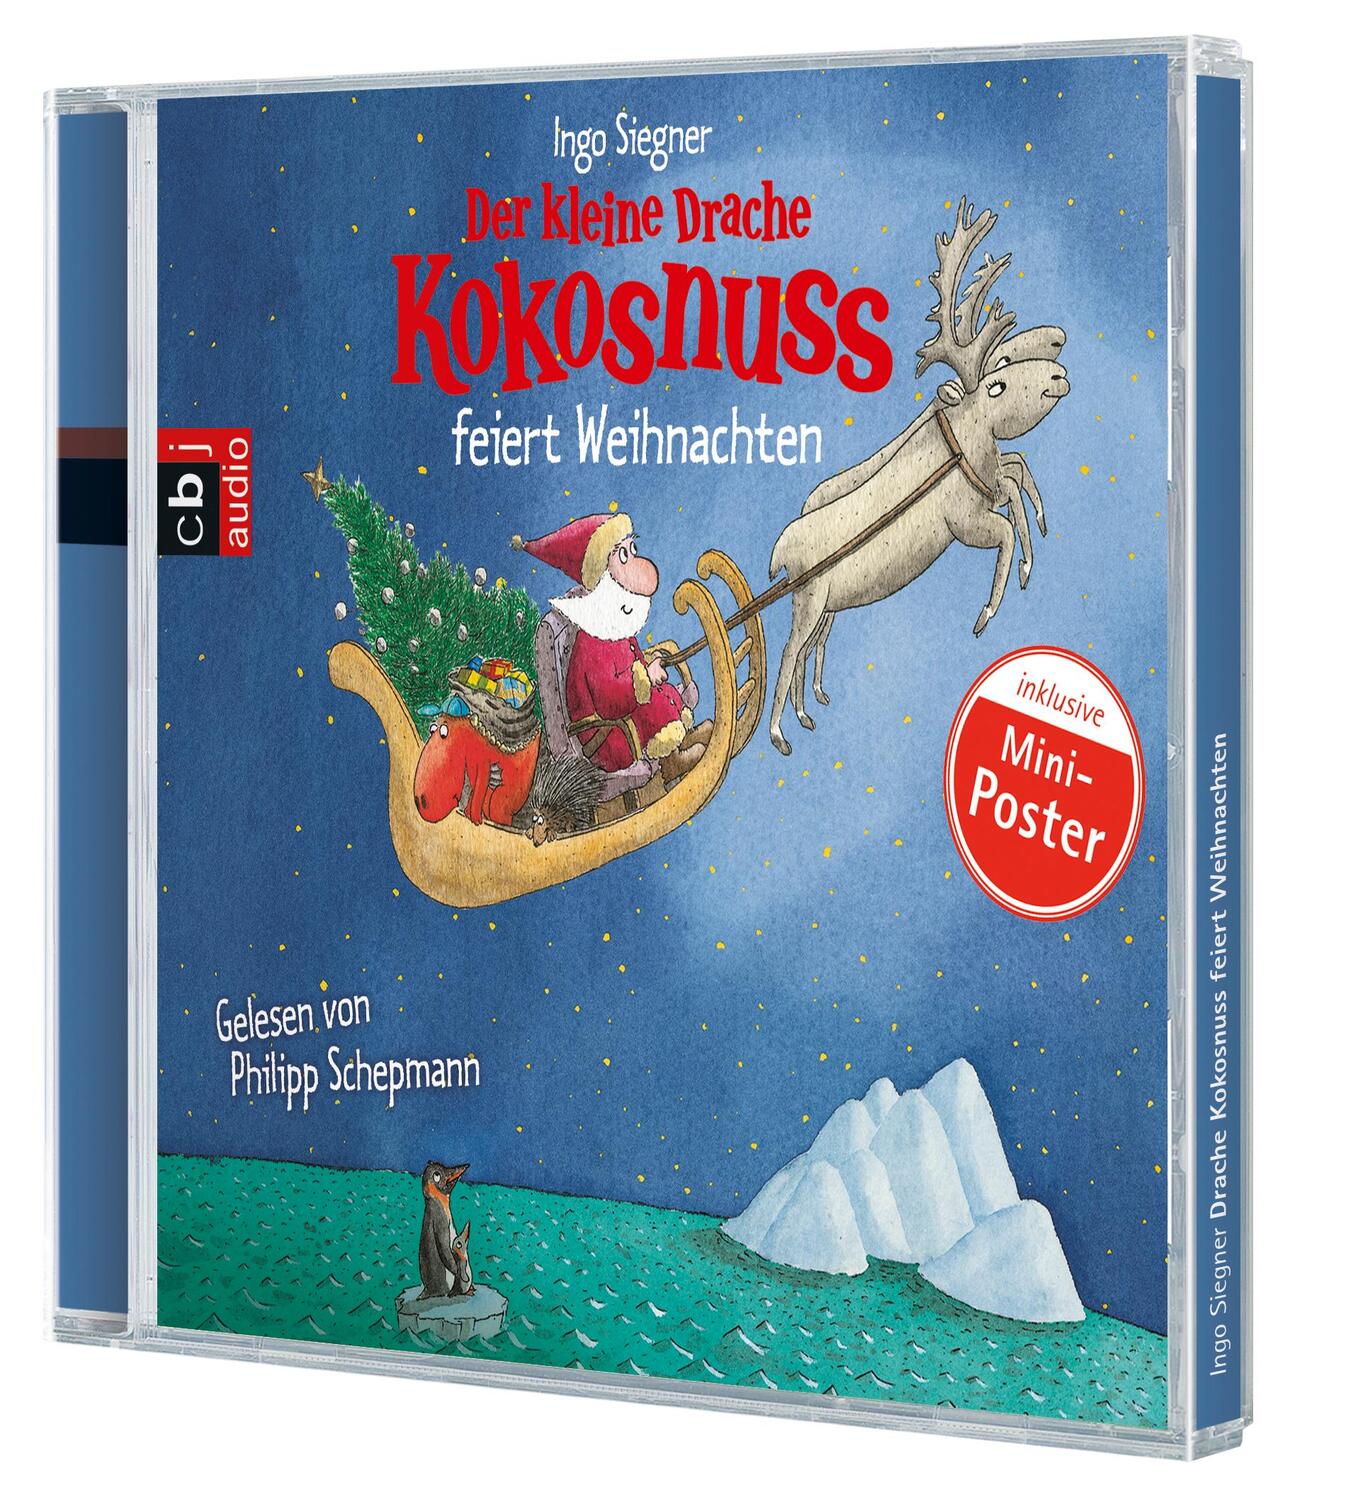 Bild: 9783837103892 | Der kleine Drache Kokosnuss feiert Weihnachten | Ingo Siegner | CD